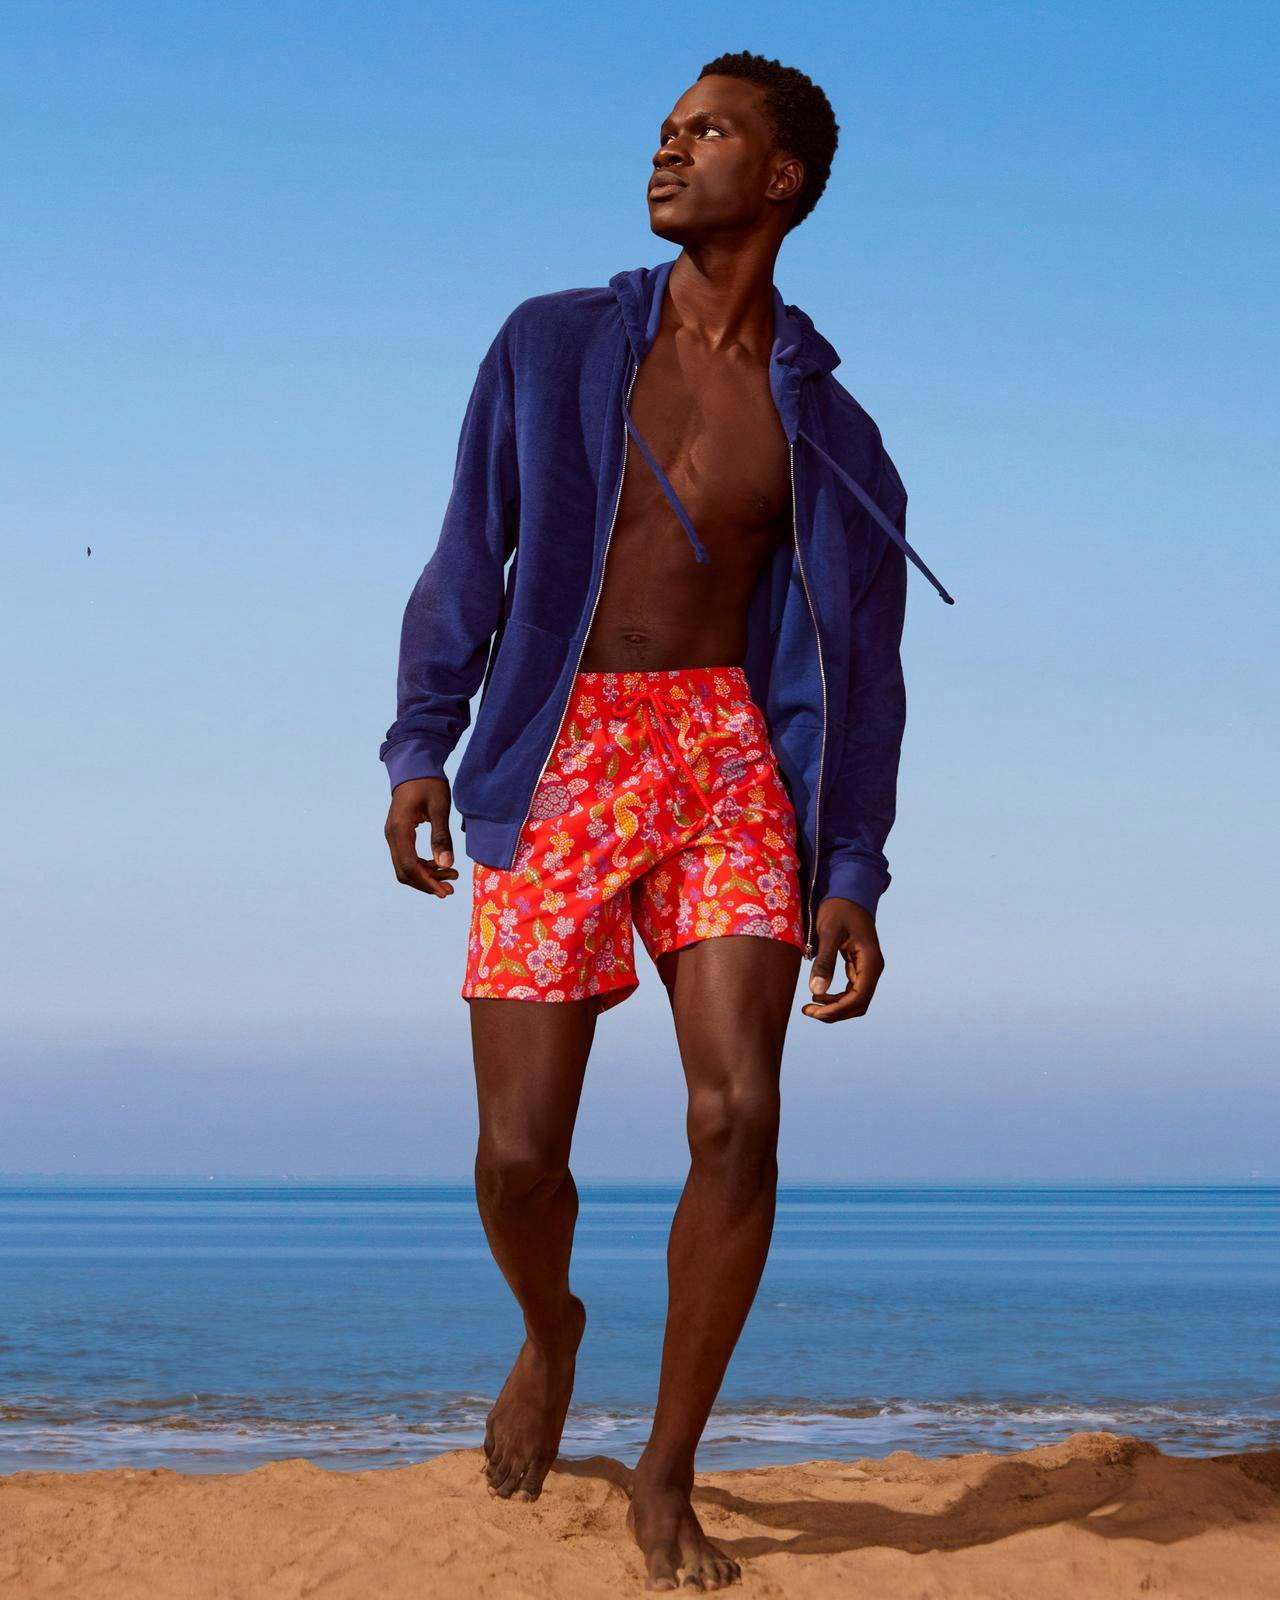 Un homme en veste bleue et en shorts sur la plage.